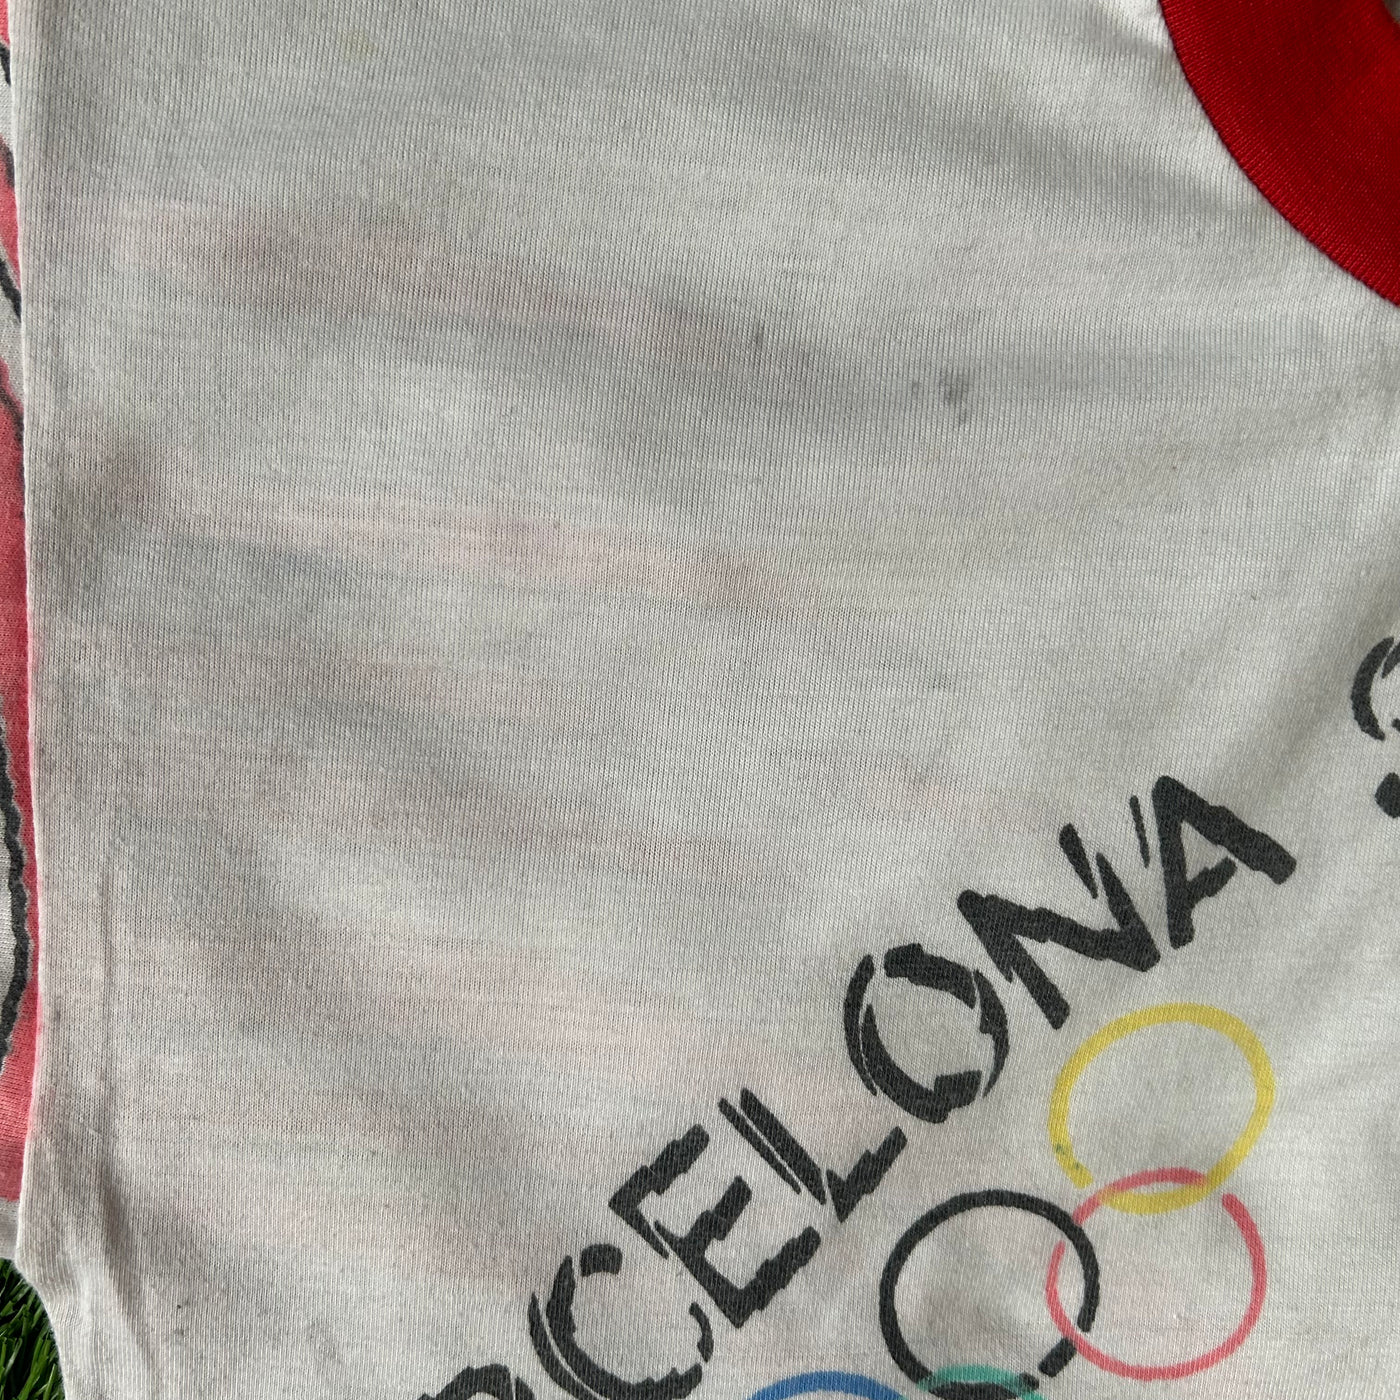 Vintage Barcelona 1992 Streamline Olympics Tee